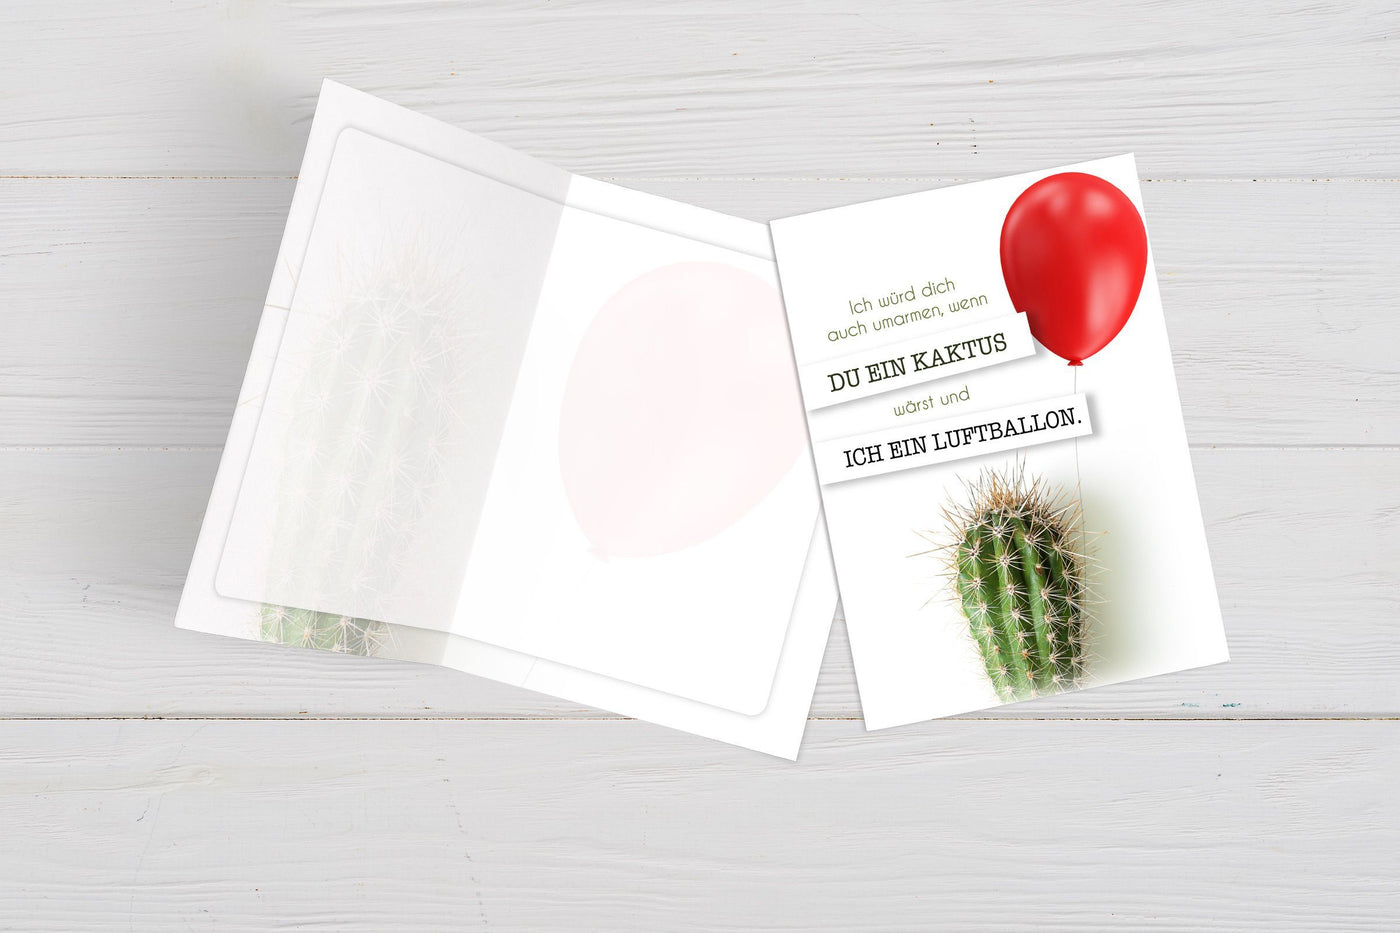 Bild: Liebeskarte - Ich würde dich auch umarmen, wenn Du ein Kaktus wärst und ich ein Luftballon. Geschenkidee